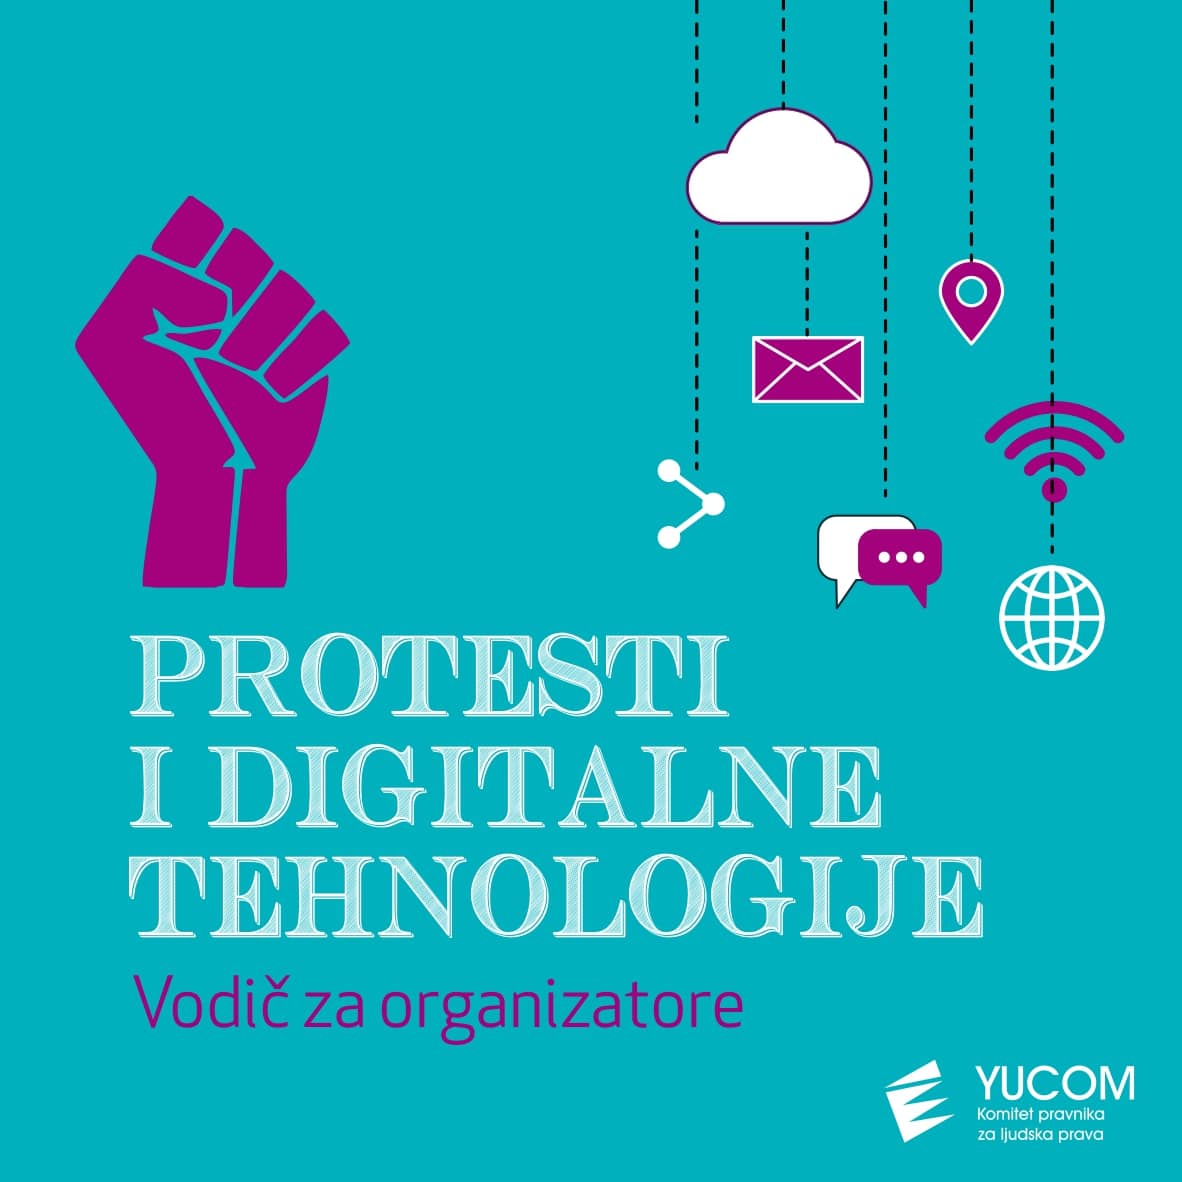 protesti-i-digtalne-tehnologijeremovedpage-0001-min.jpg